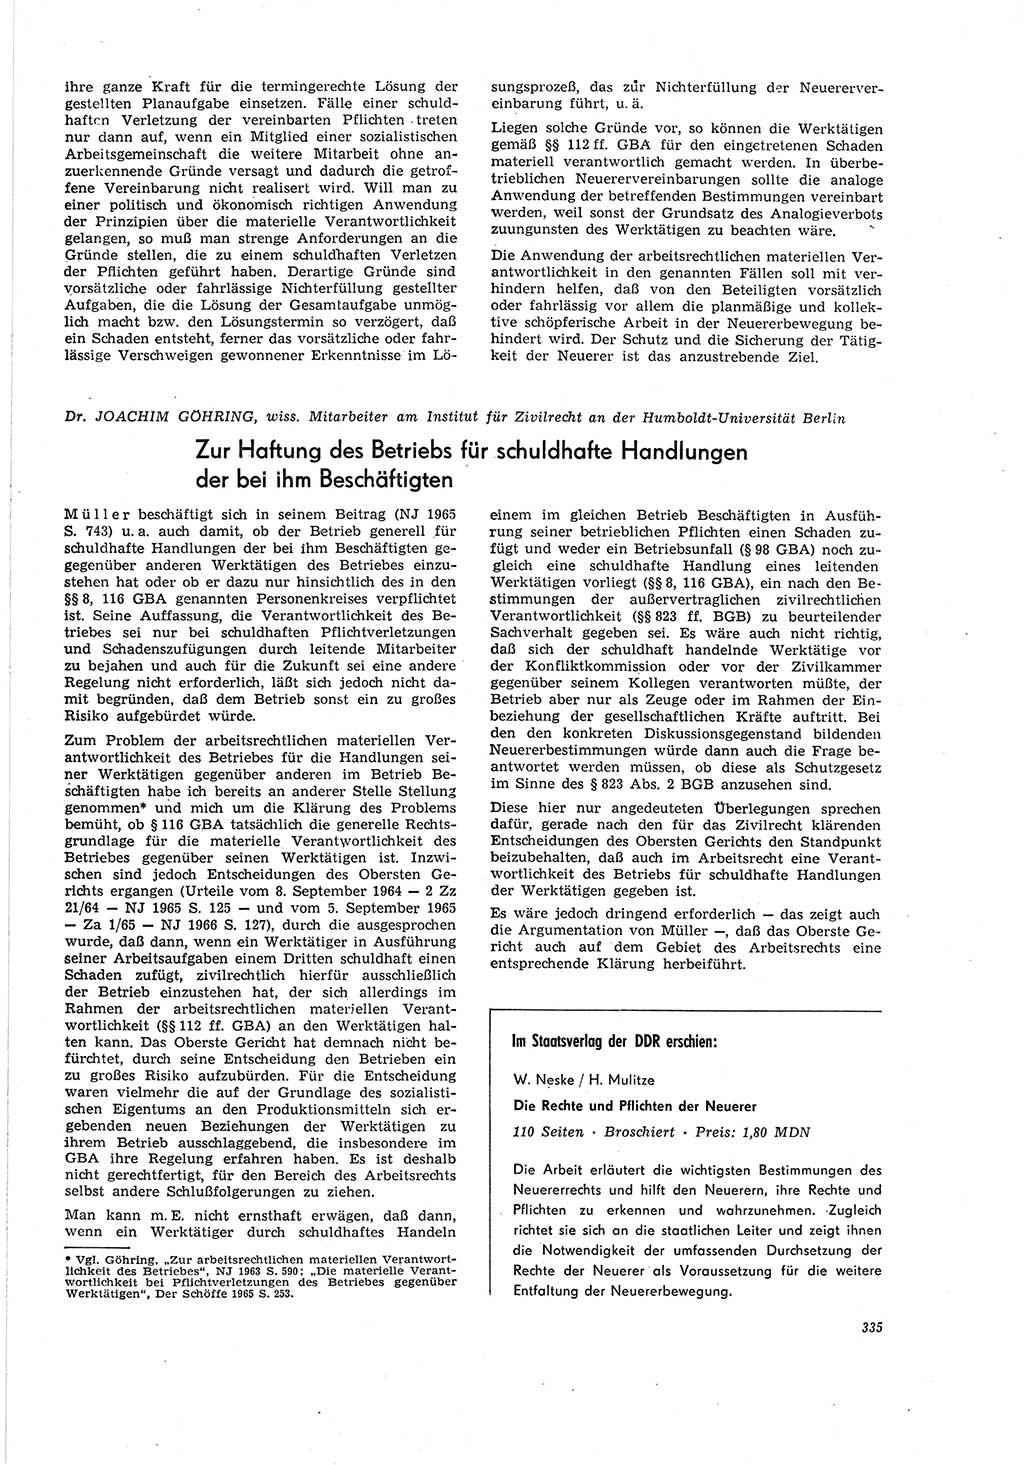 Neue Justiz (NJ), Zeitschrift für Recht und Rechtswissenschaft [Deutsche Demokratische Republik (DDR)], 20. Jahrgang 1966, Seite 335 (NJ DDR 1966, S. 335)